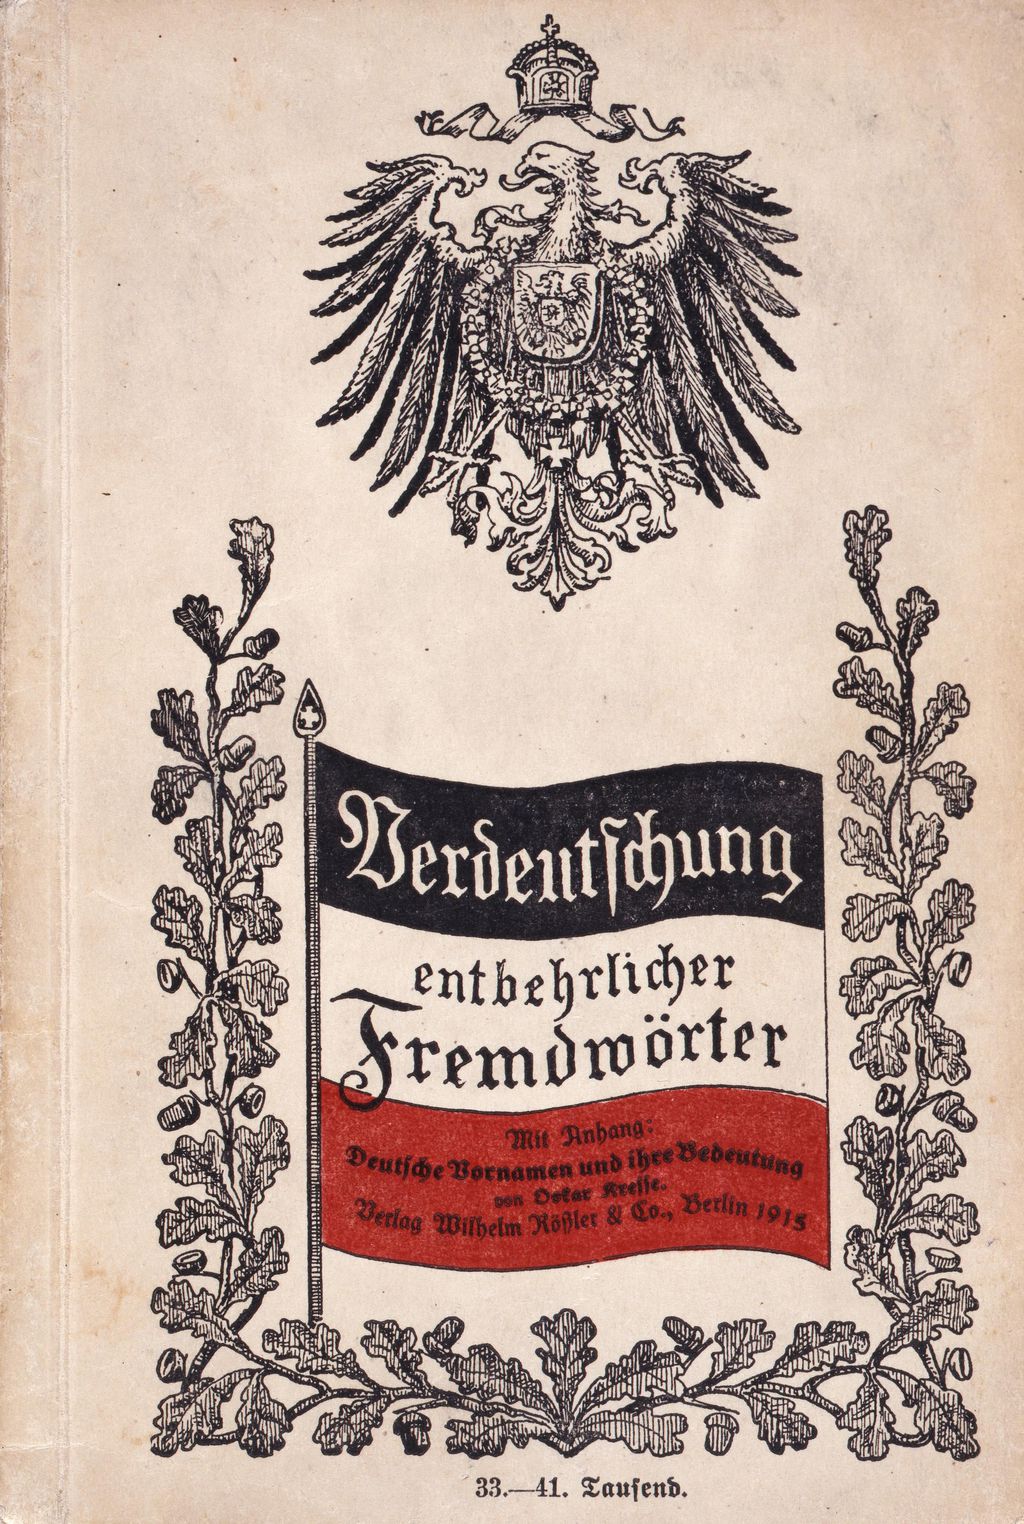 Broschüre: Synonymwörterbuch zur "Verdeutschung entbehrlicher Fremdwörter", 1915